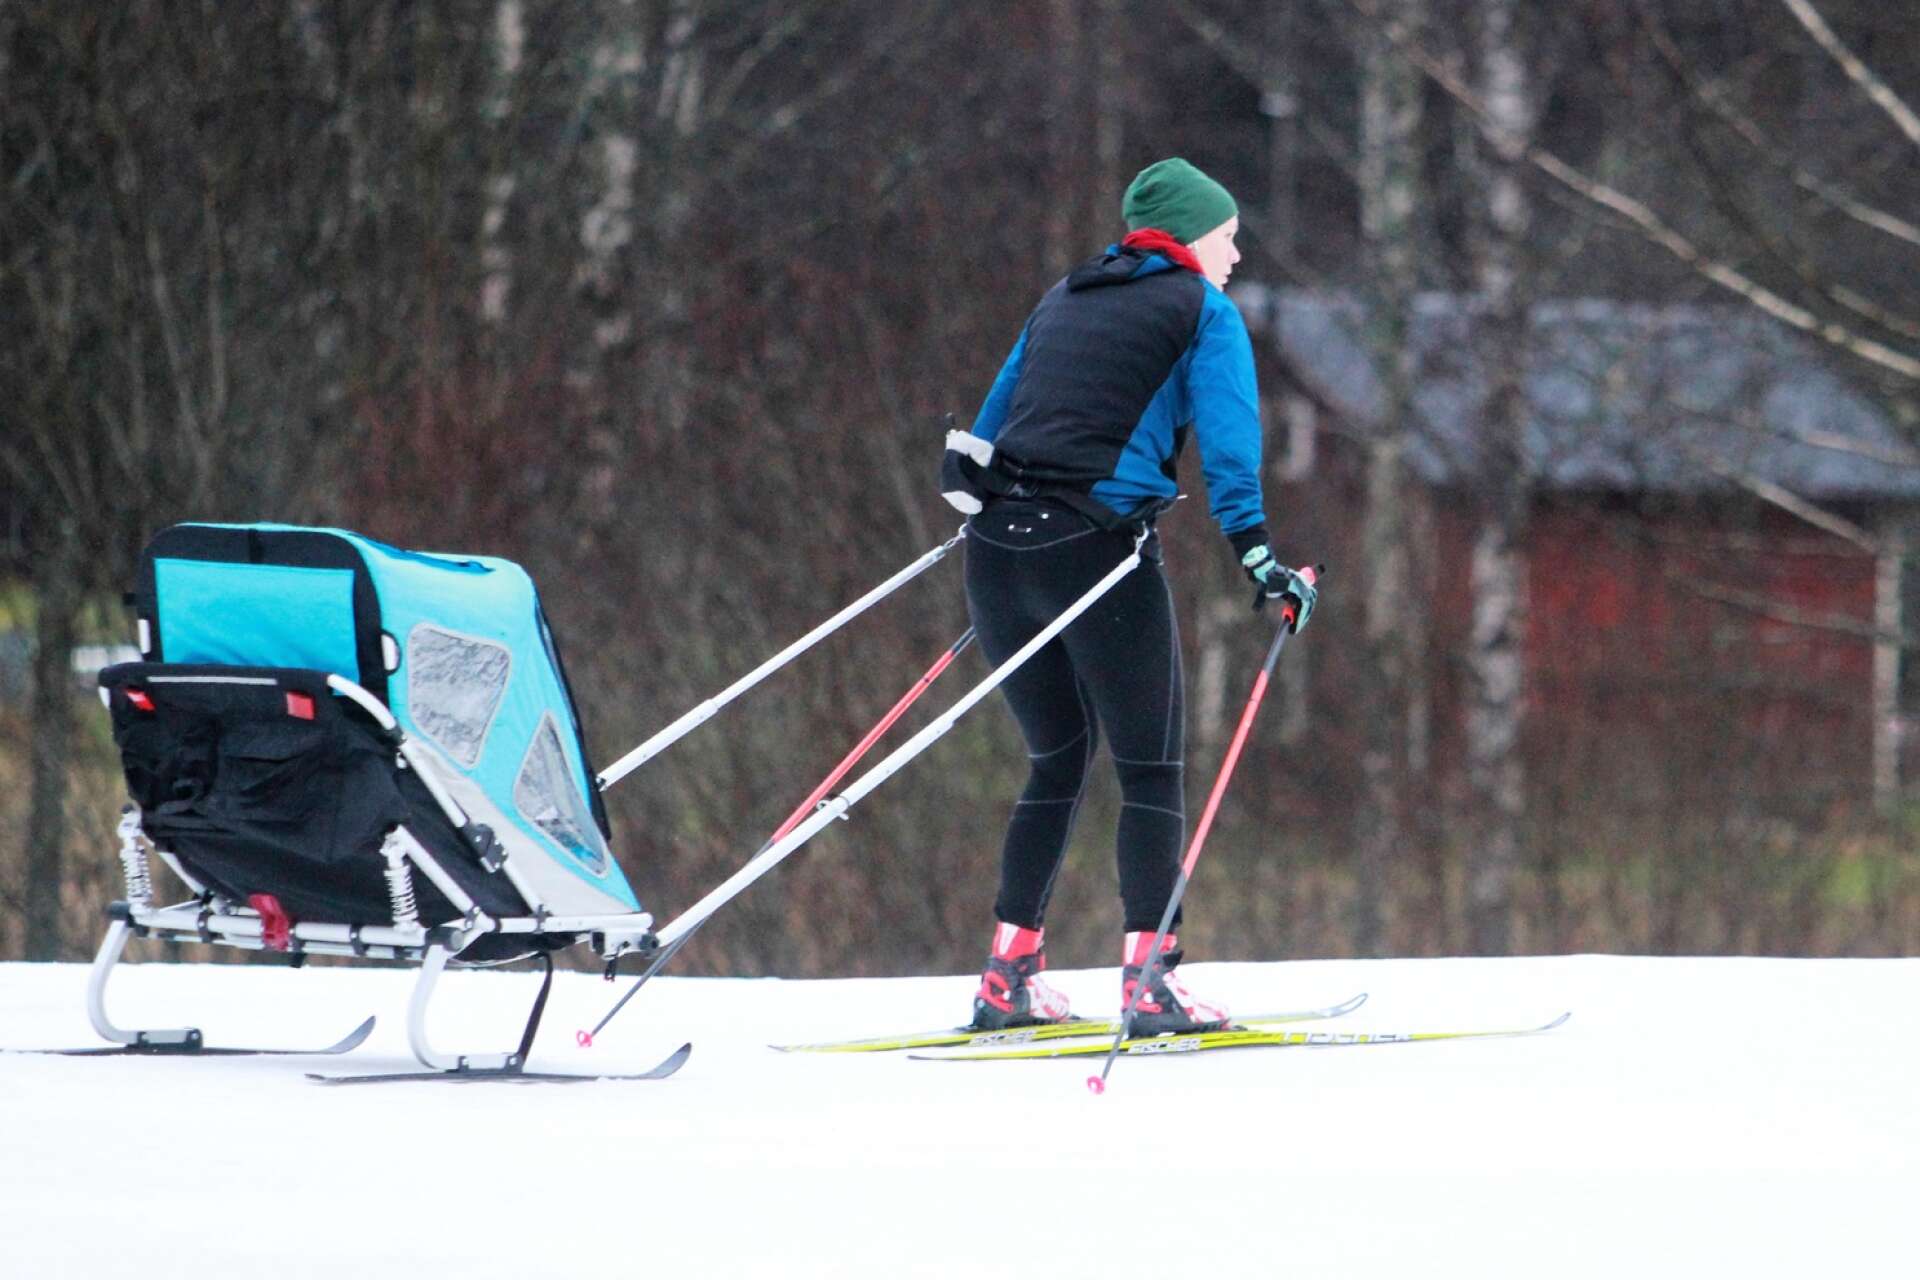 Ölmebon Ebba Hagbom skidade i tisdags. I vagnen satt hennes tvååriga dotter Rut, väl skyddad från väder och vind.